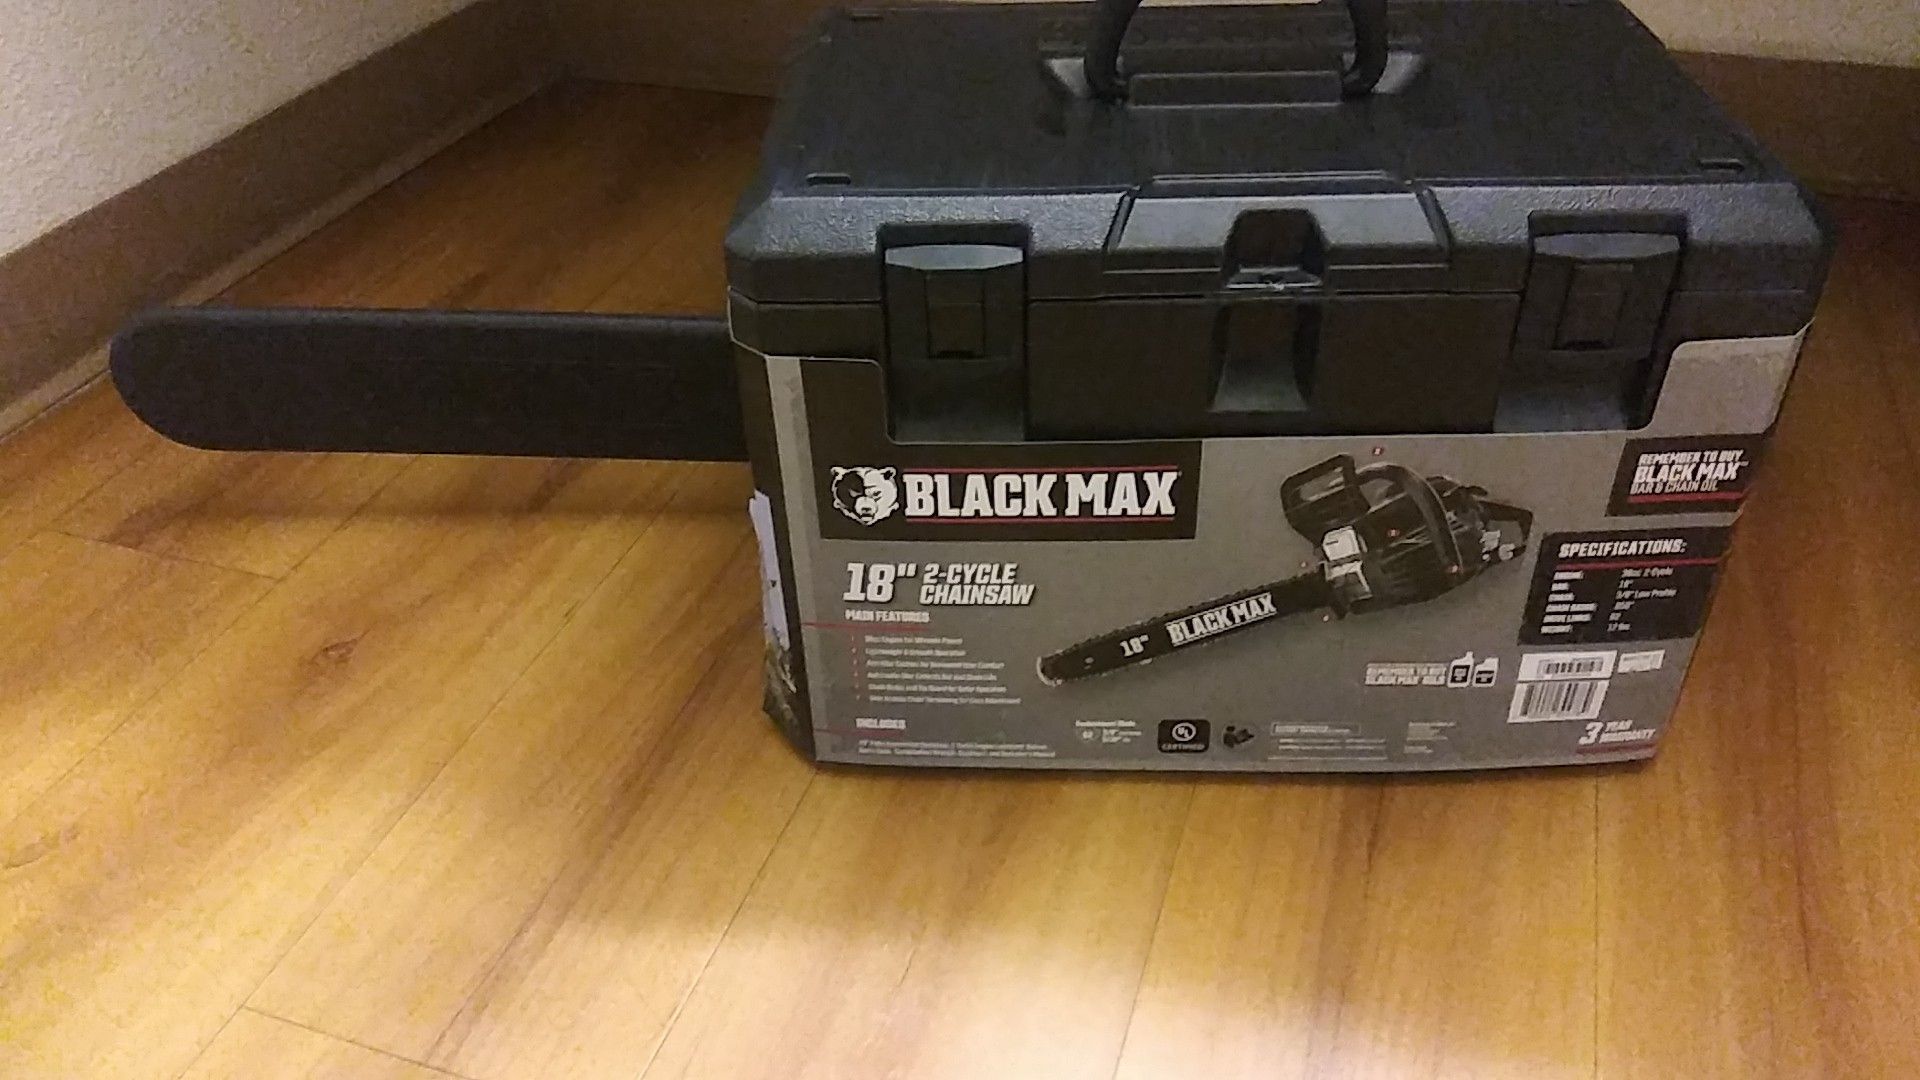 Blackmax chainsaw